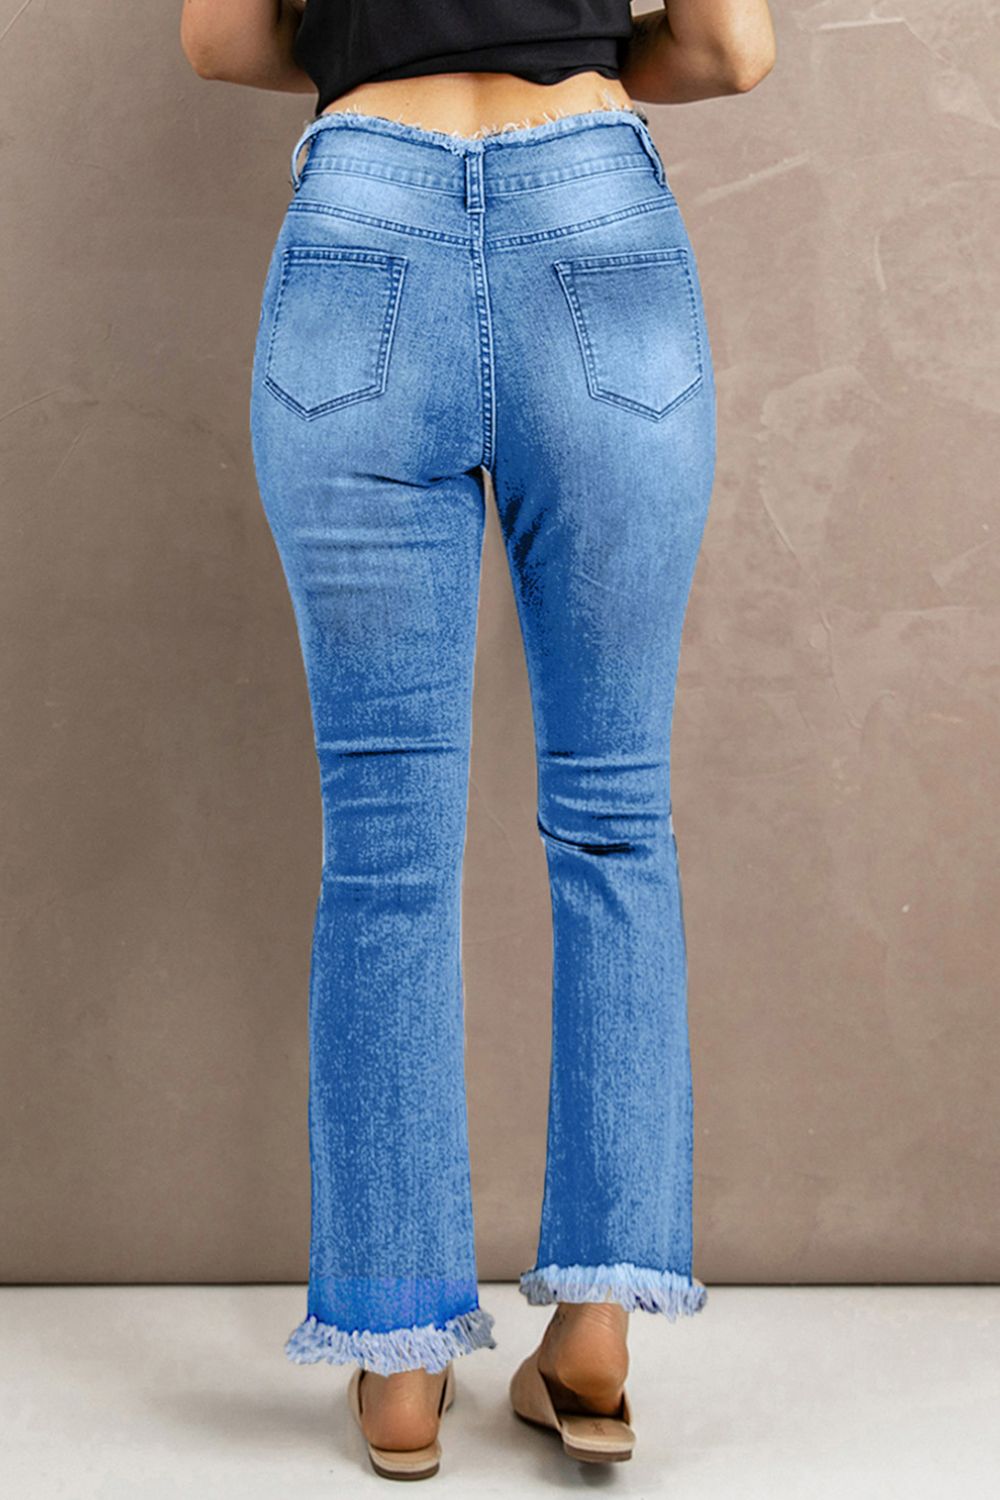 Jeans con dobladillo sin rematar y cintura alta